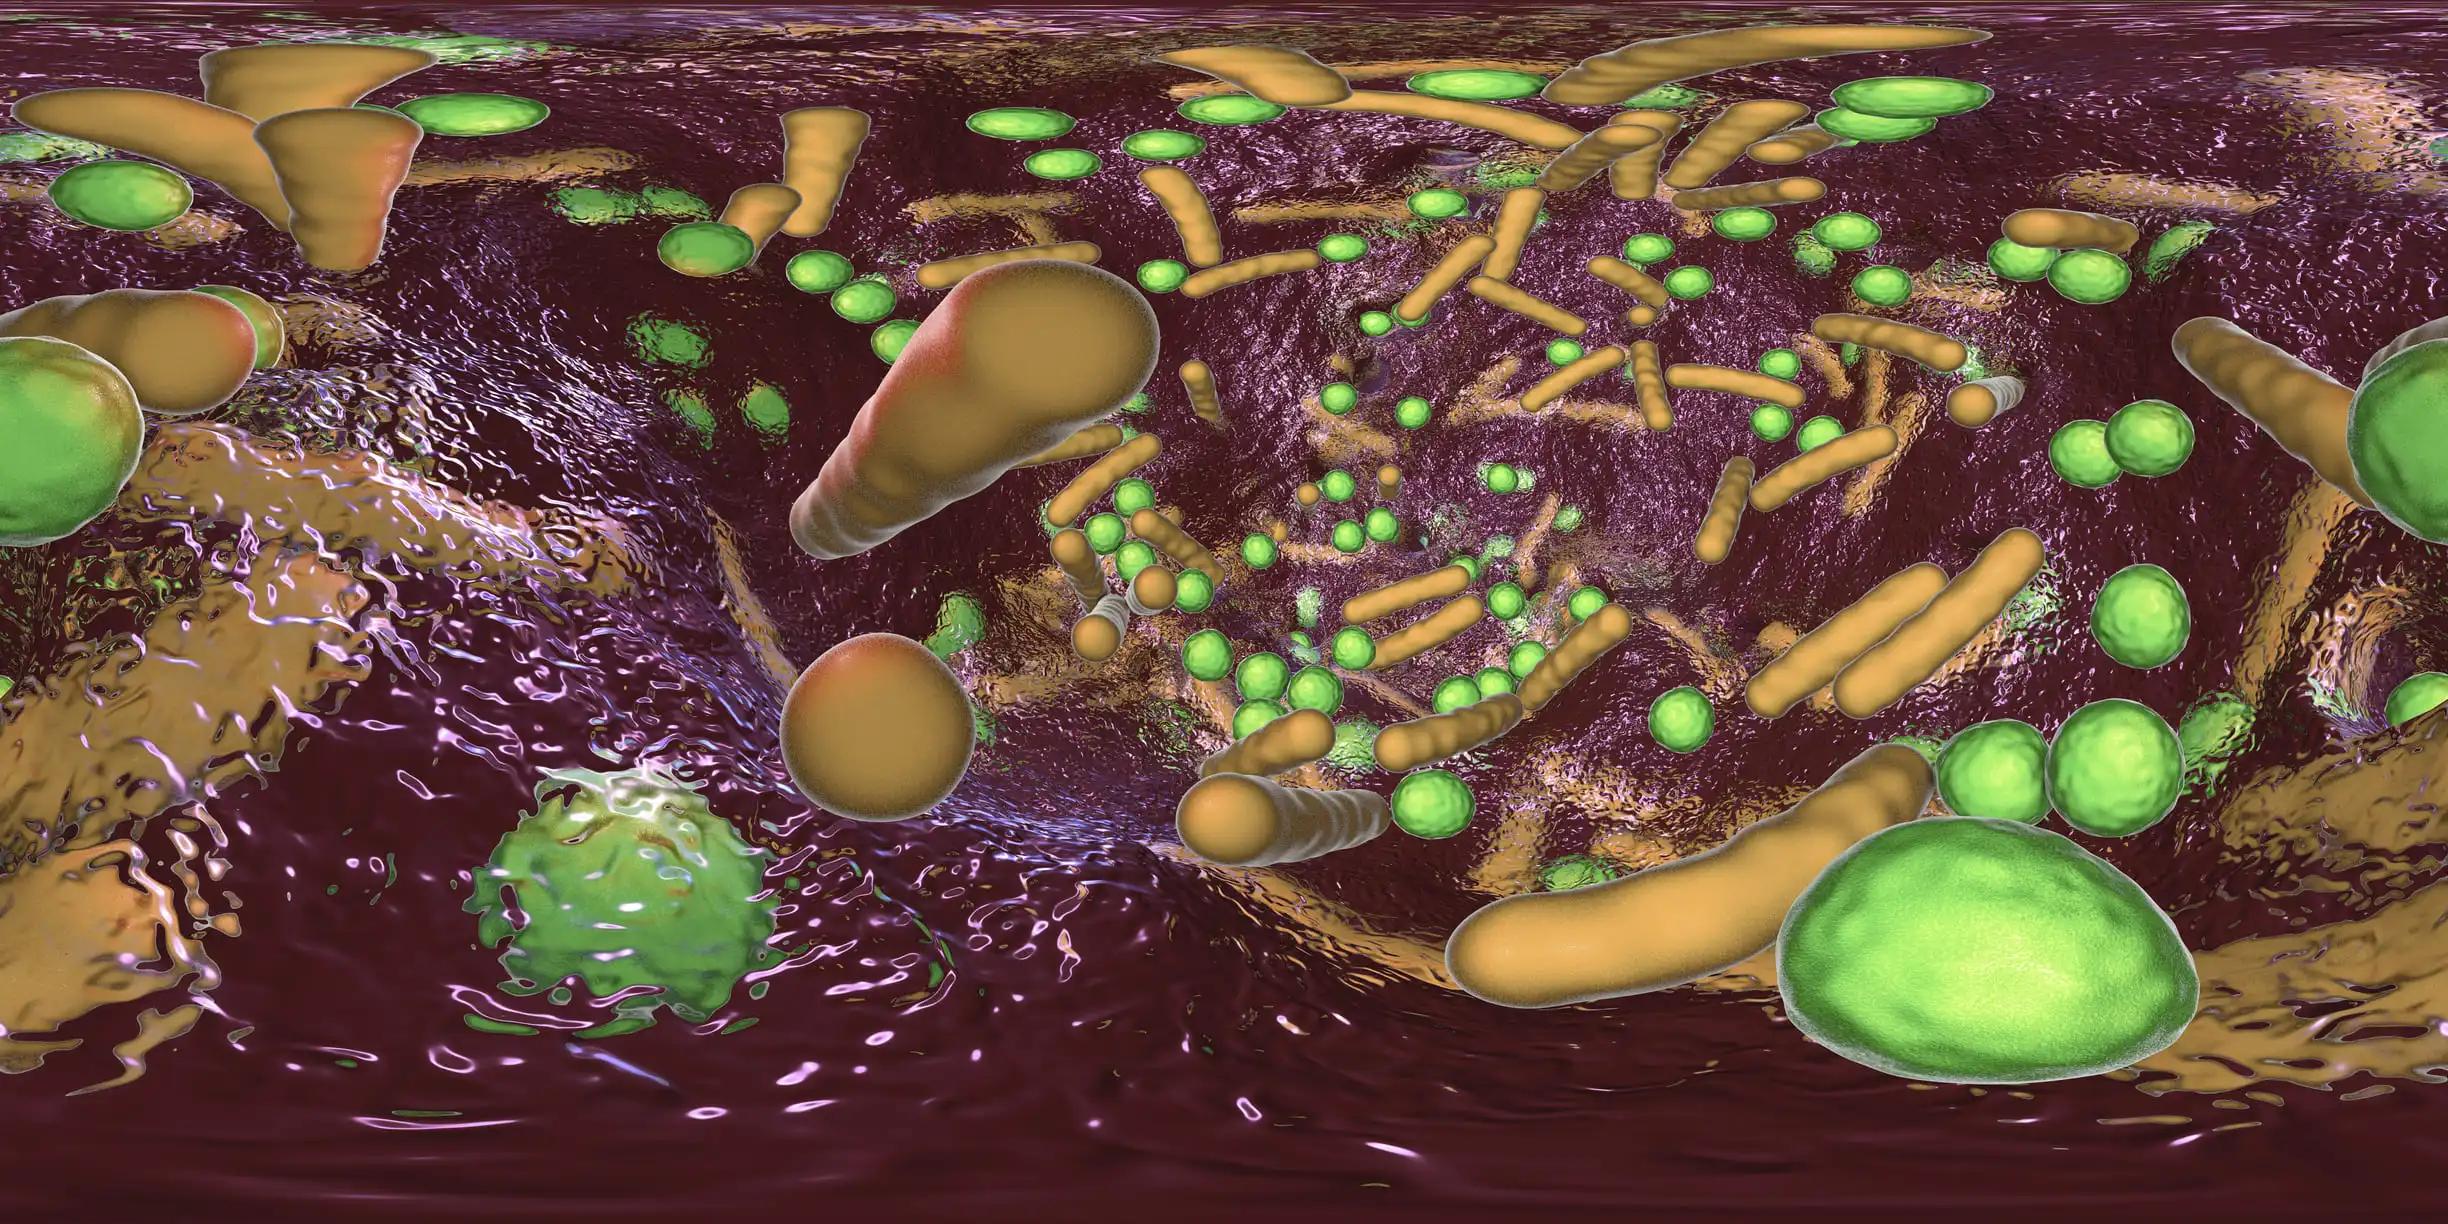 360-Degree Spherical Panorama of Bacterial Biofilm